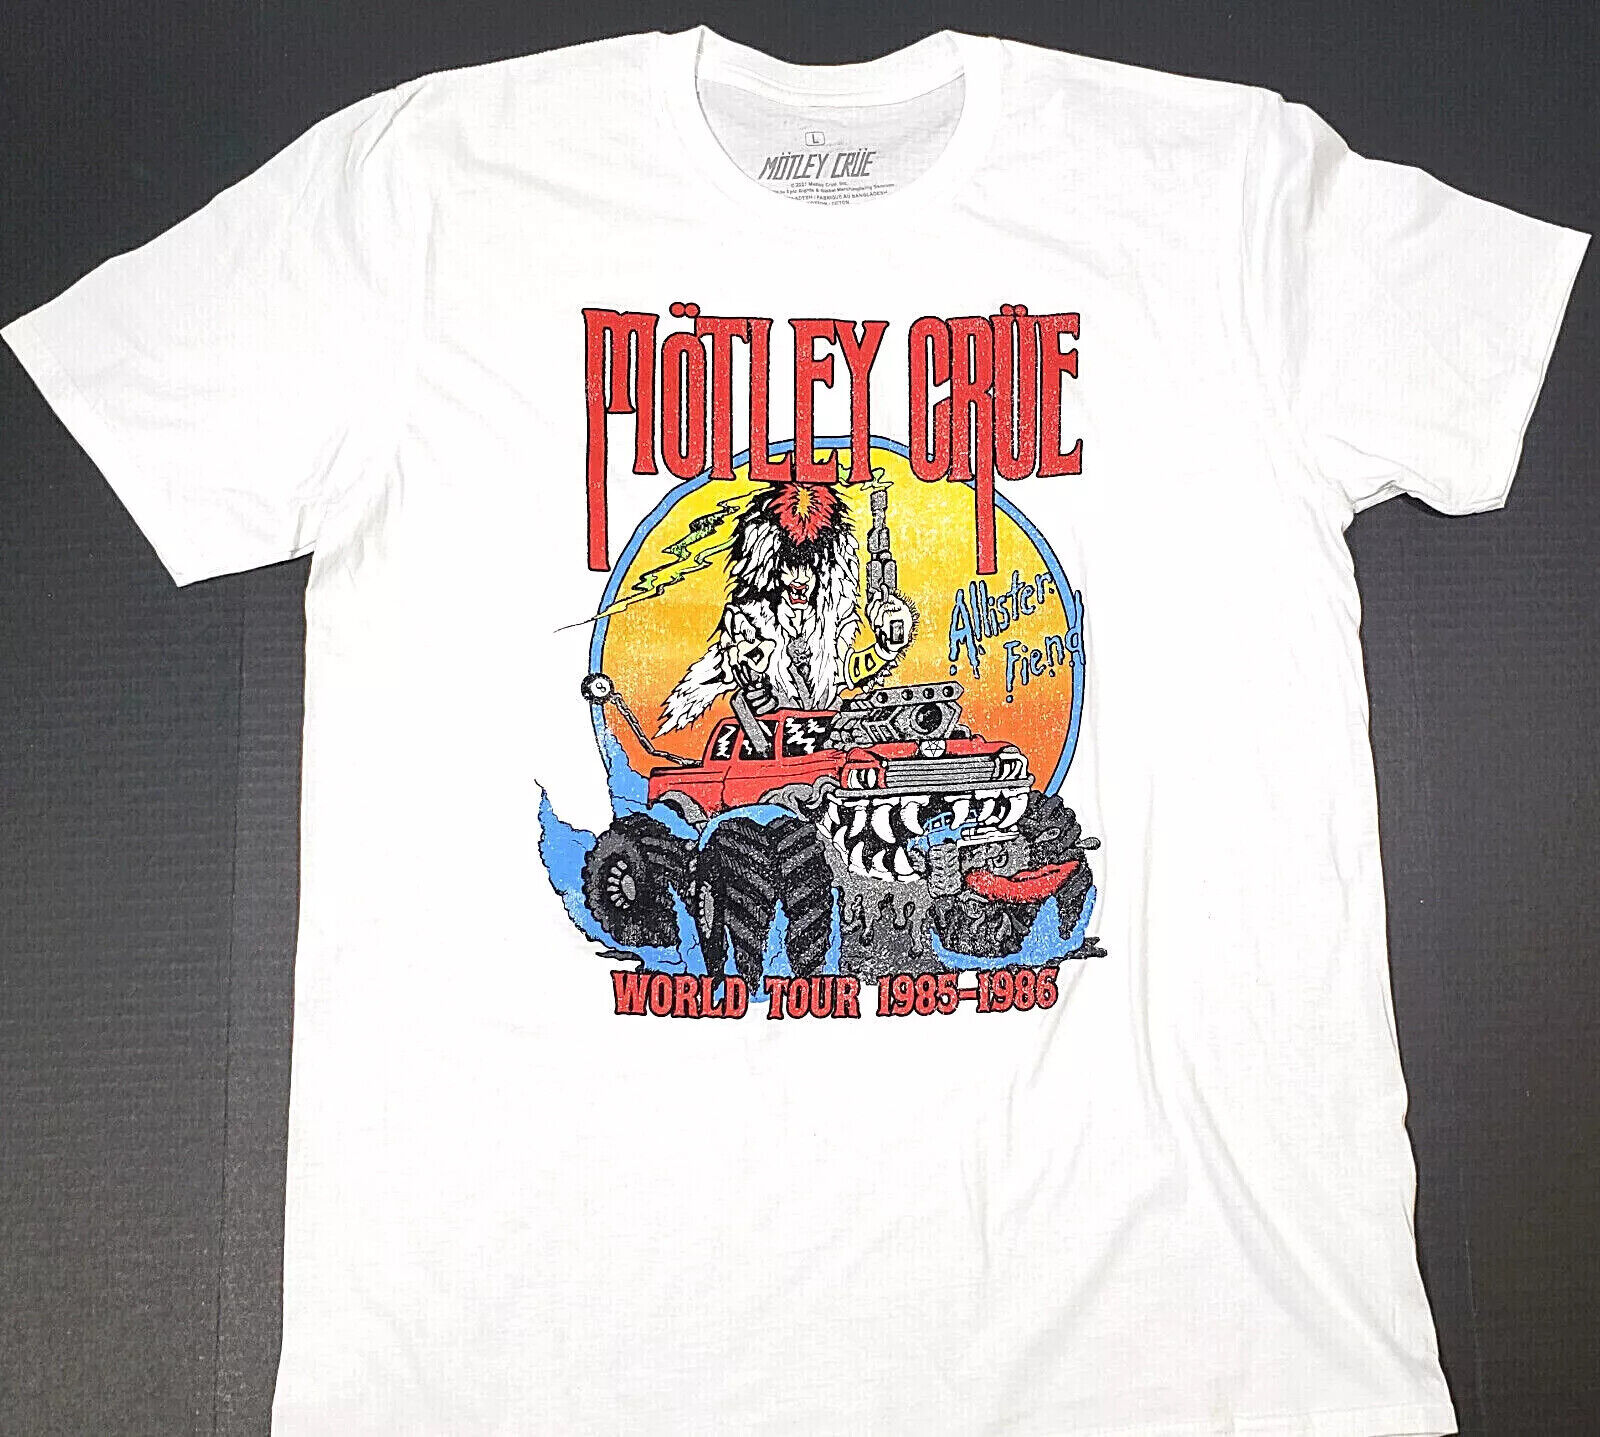 HOT SALE Motley Crue Allister Fiend World Tour 85-86 New T-Shirt